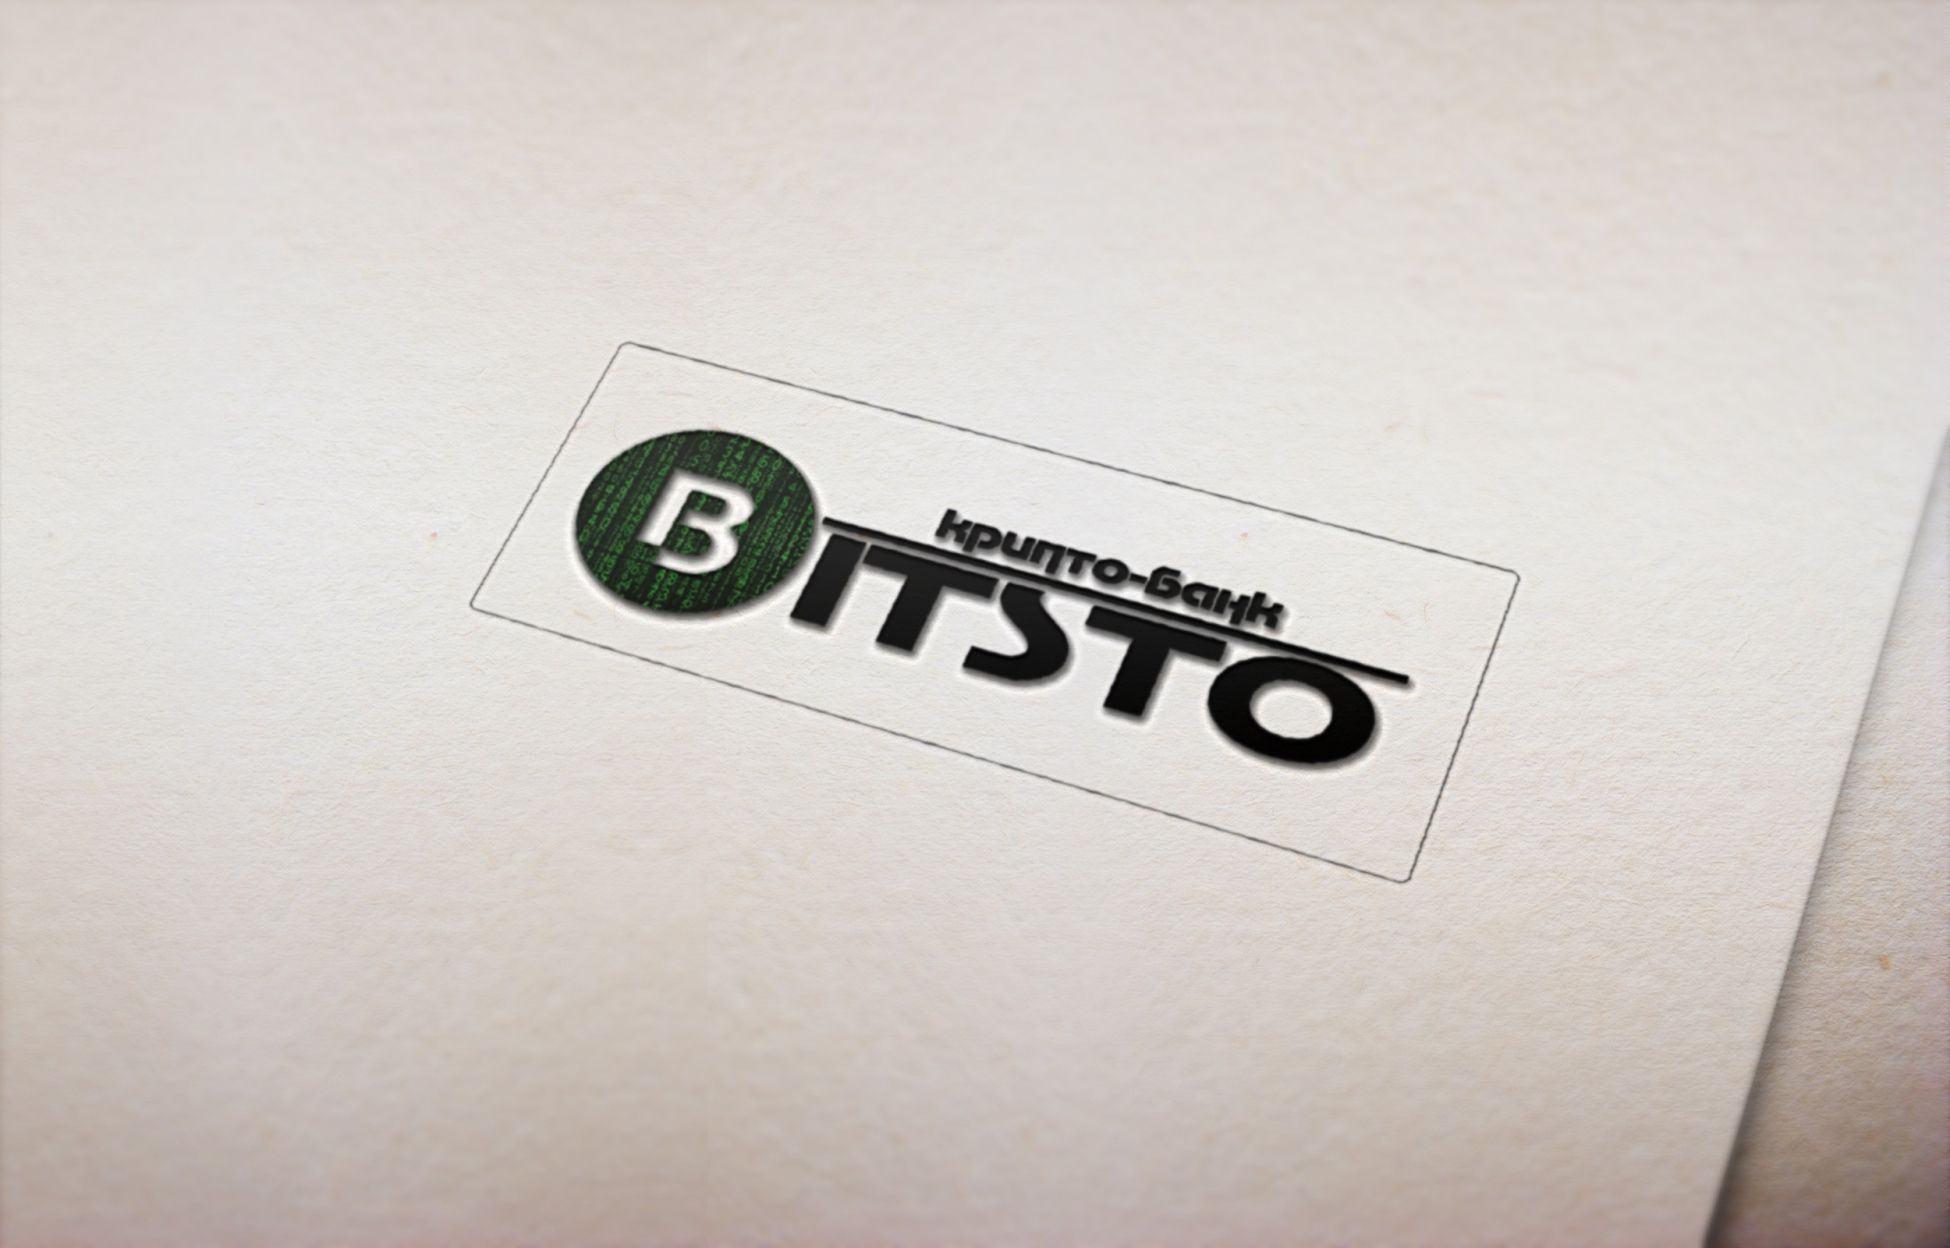 Логотип для Bitsto - дизайнер stasek871